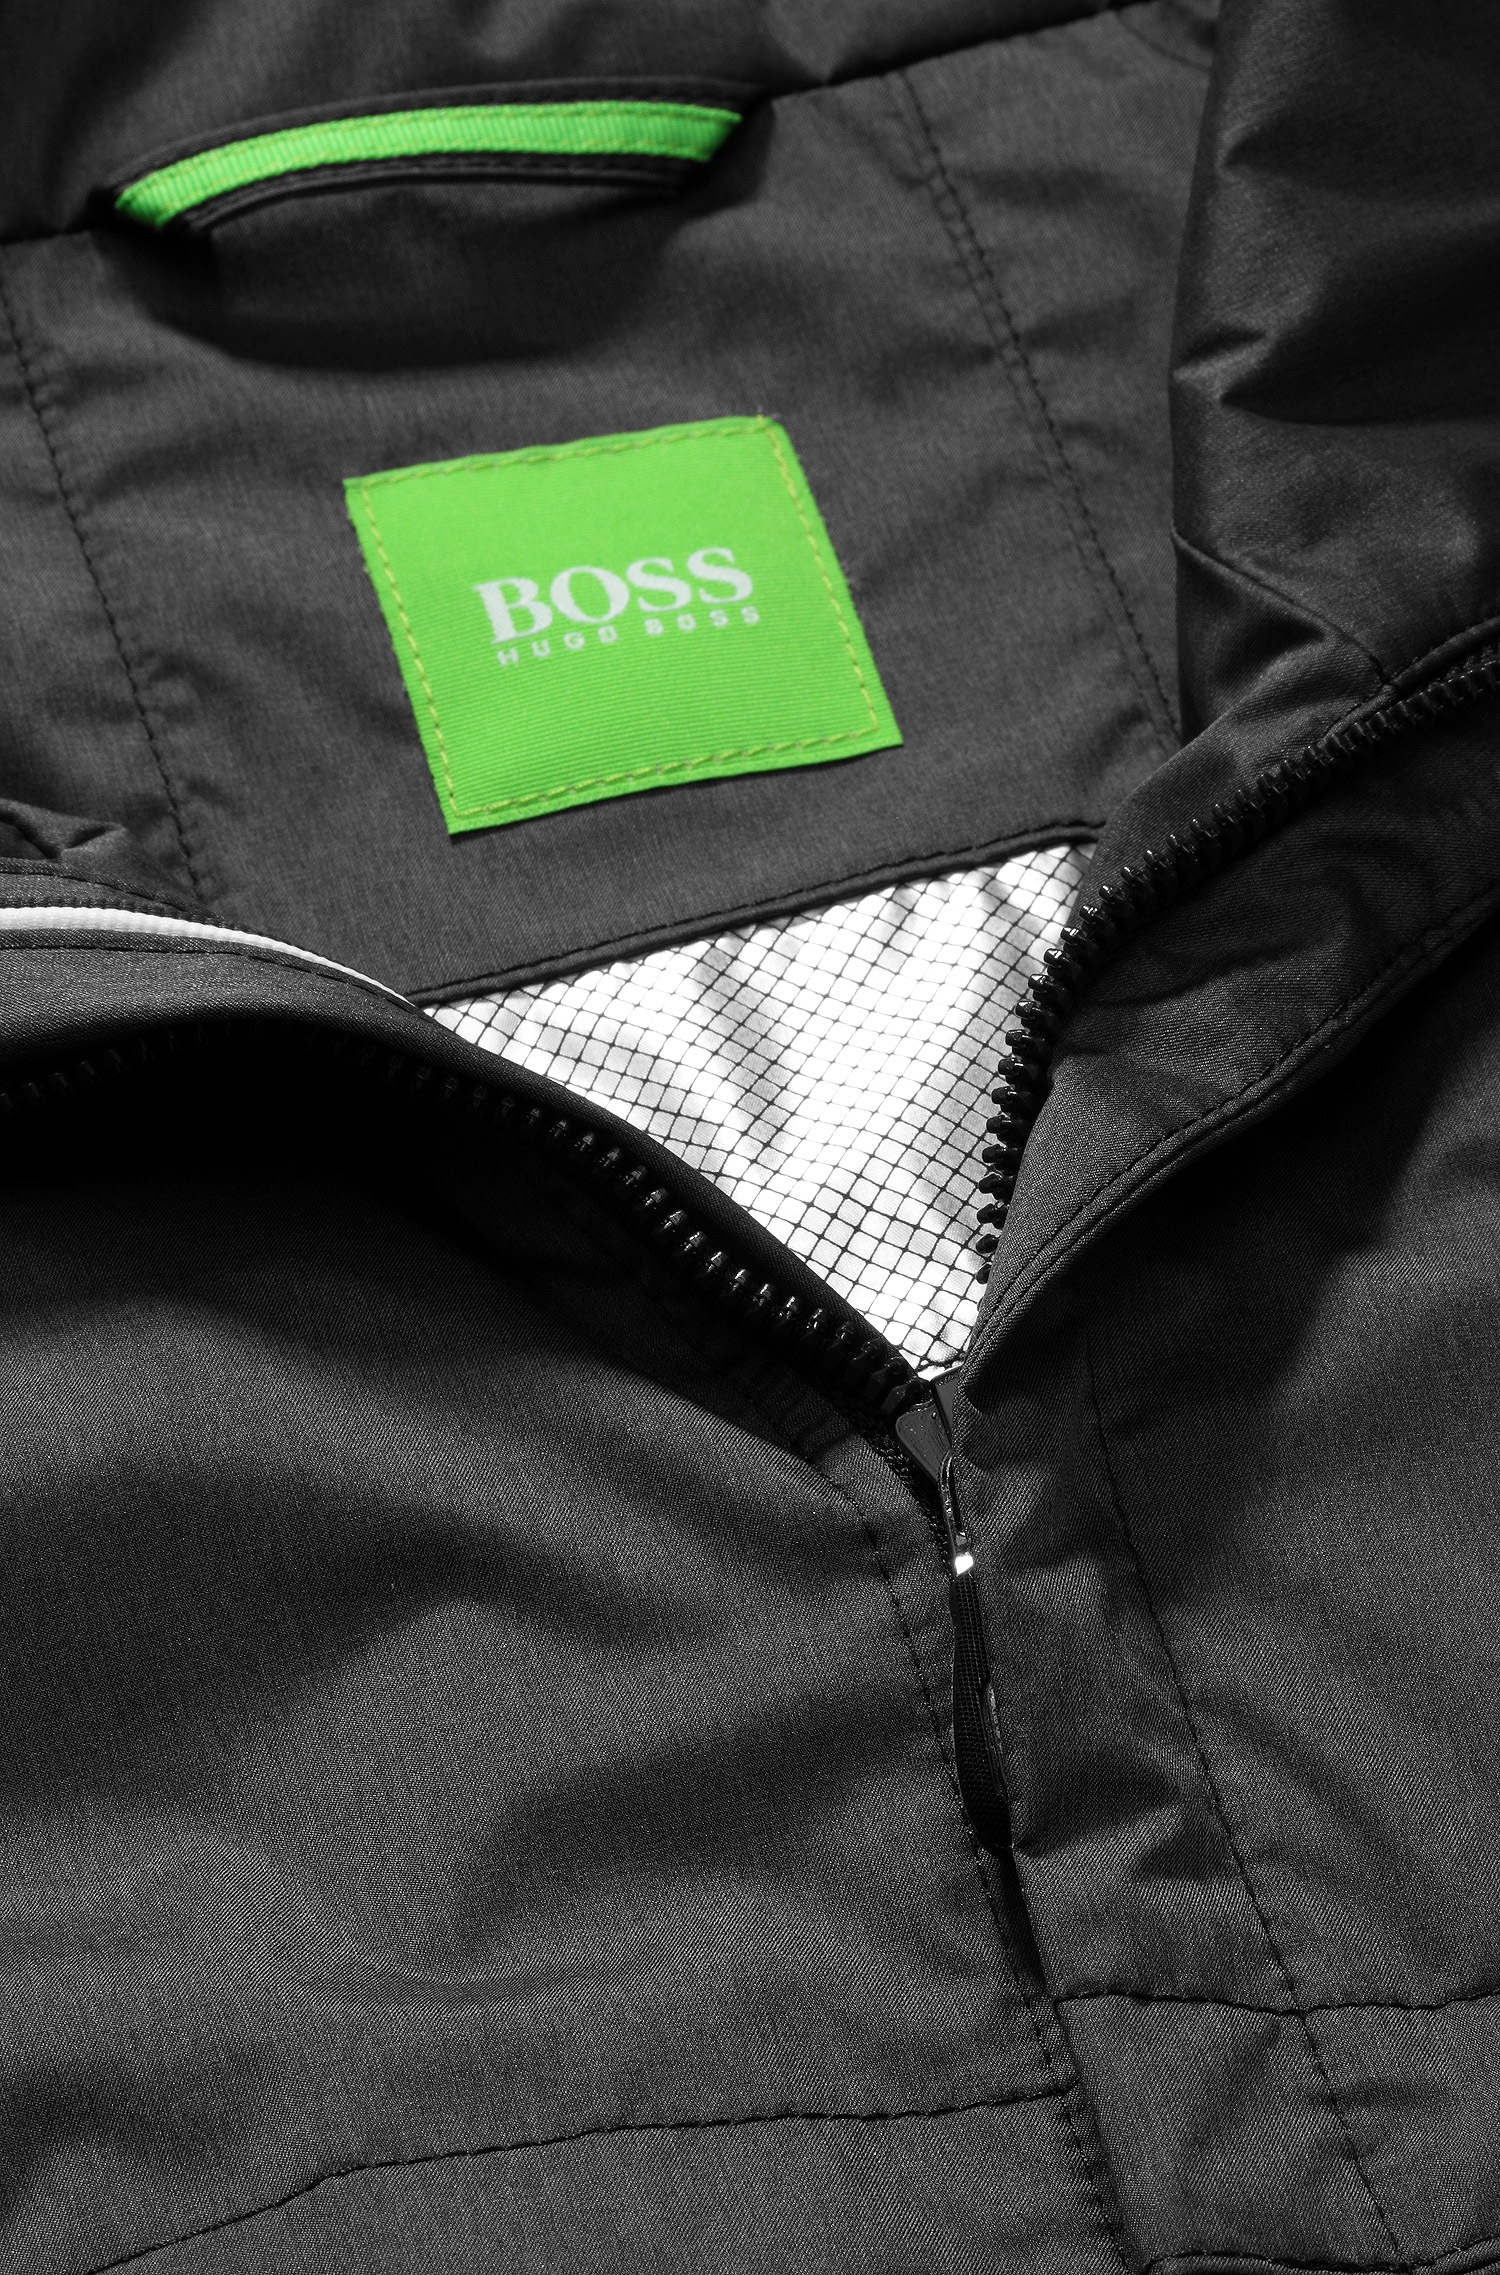 إكراه الألومنيوم الاشمئزاز غير آمن موحل العديد من المواقف الخطيرة hugo boss  green jadon jacket grey - abingtonseniorcommunitycenter.com